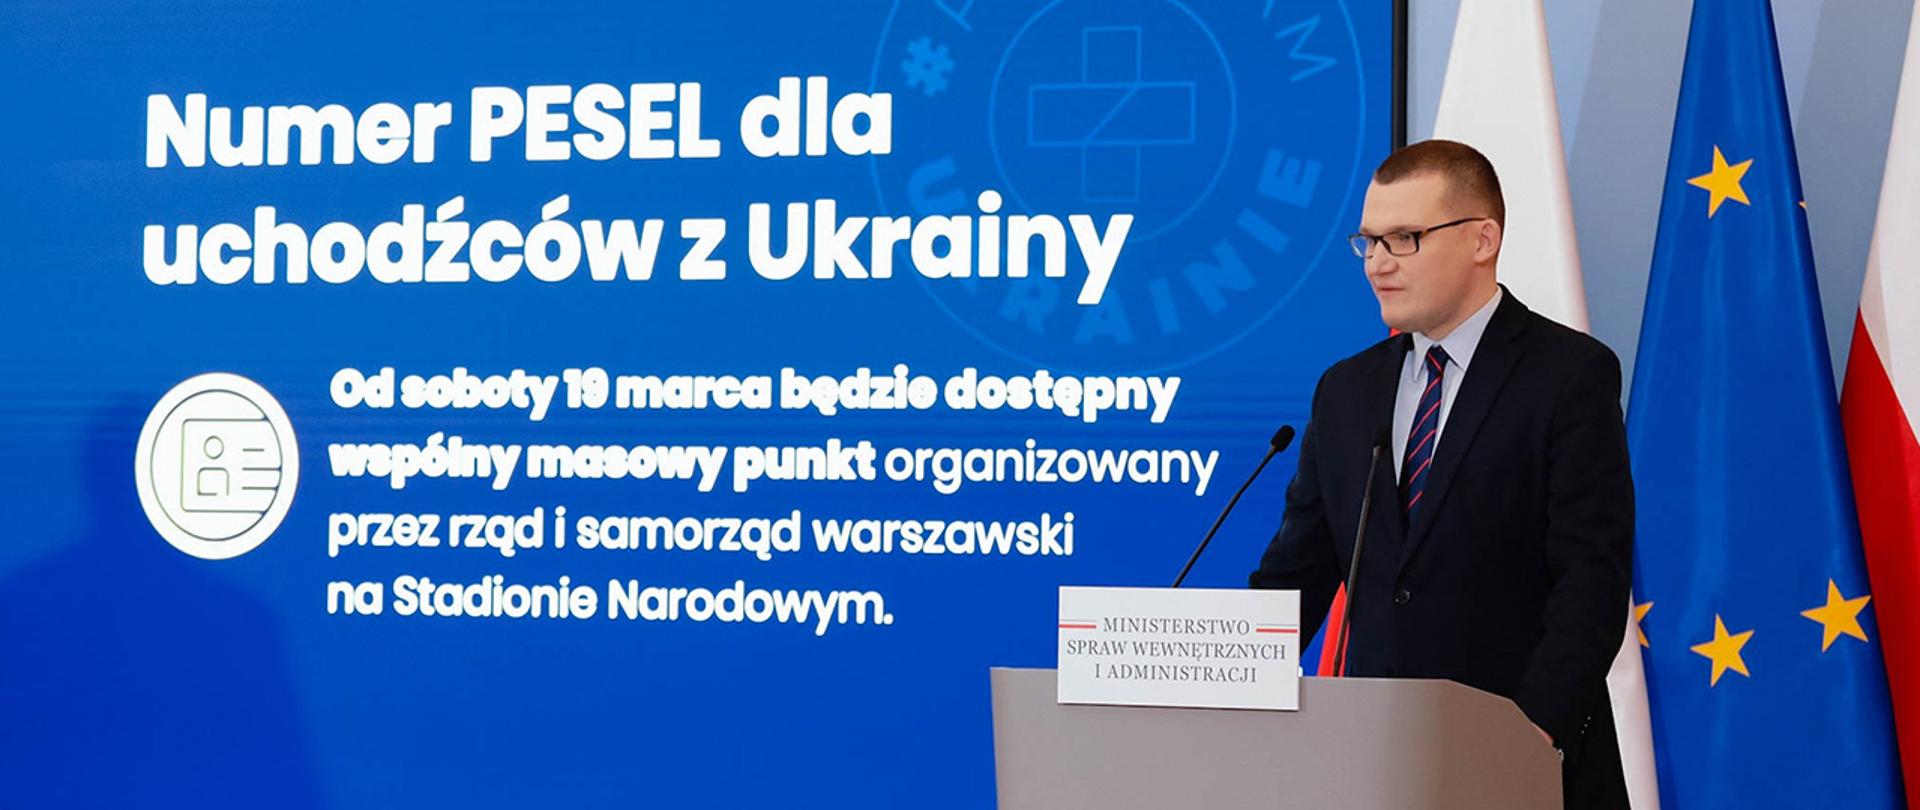 Wiceminister Paweł Szefernaker podczas wystąpienia na konferencji prasowej w Kancelarii Prezesa Rady Ministrów.